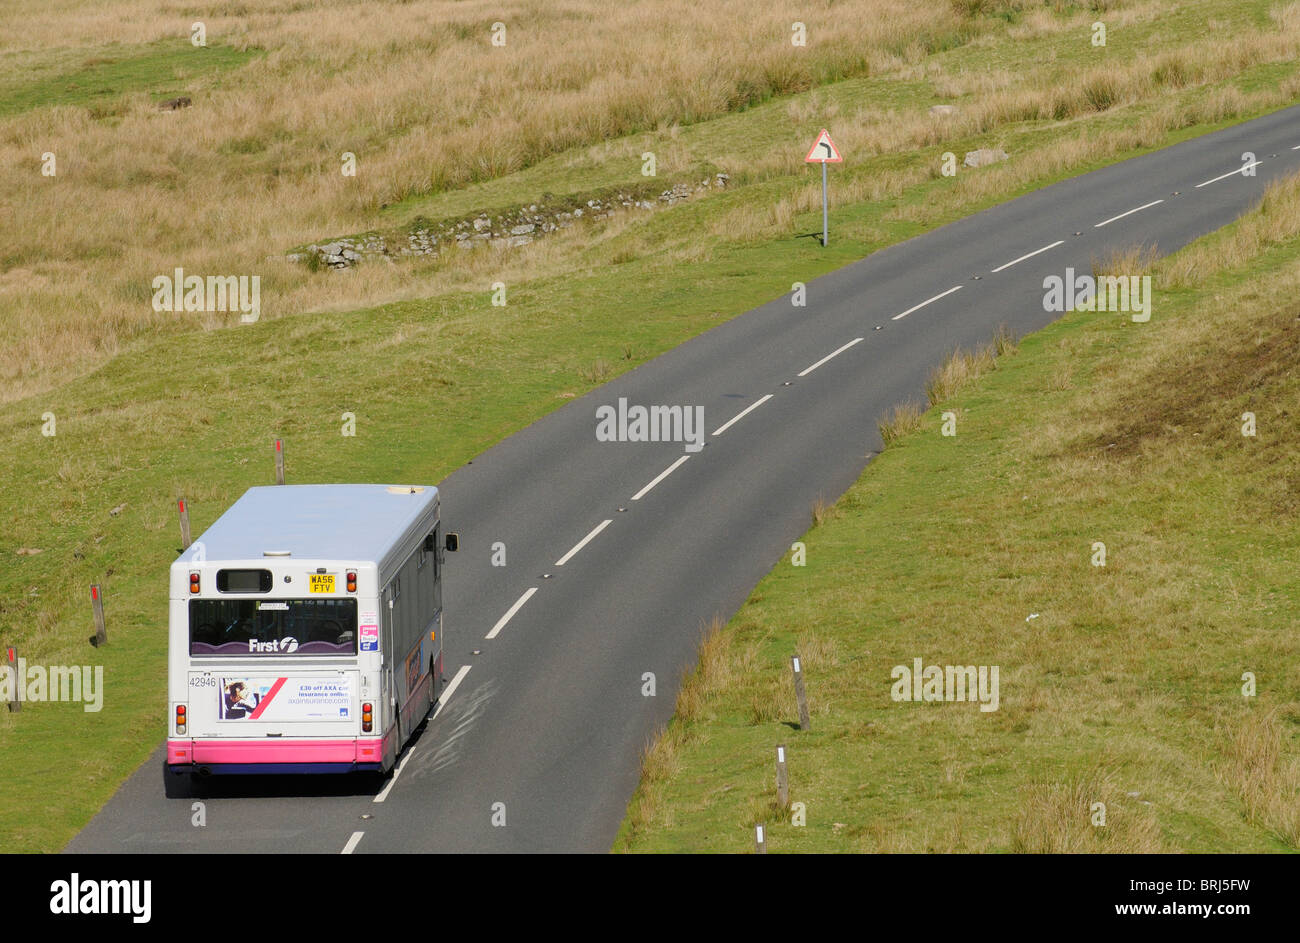 Dartmoor National Park Devon England UK A public service bus enroute across the famous parkland Stock Photo